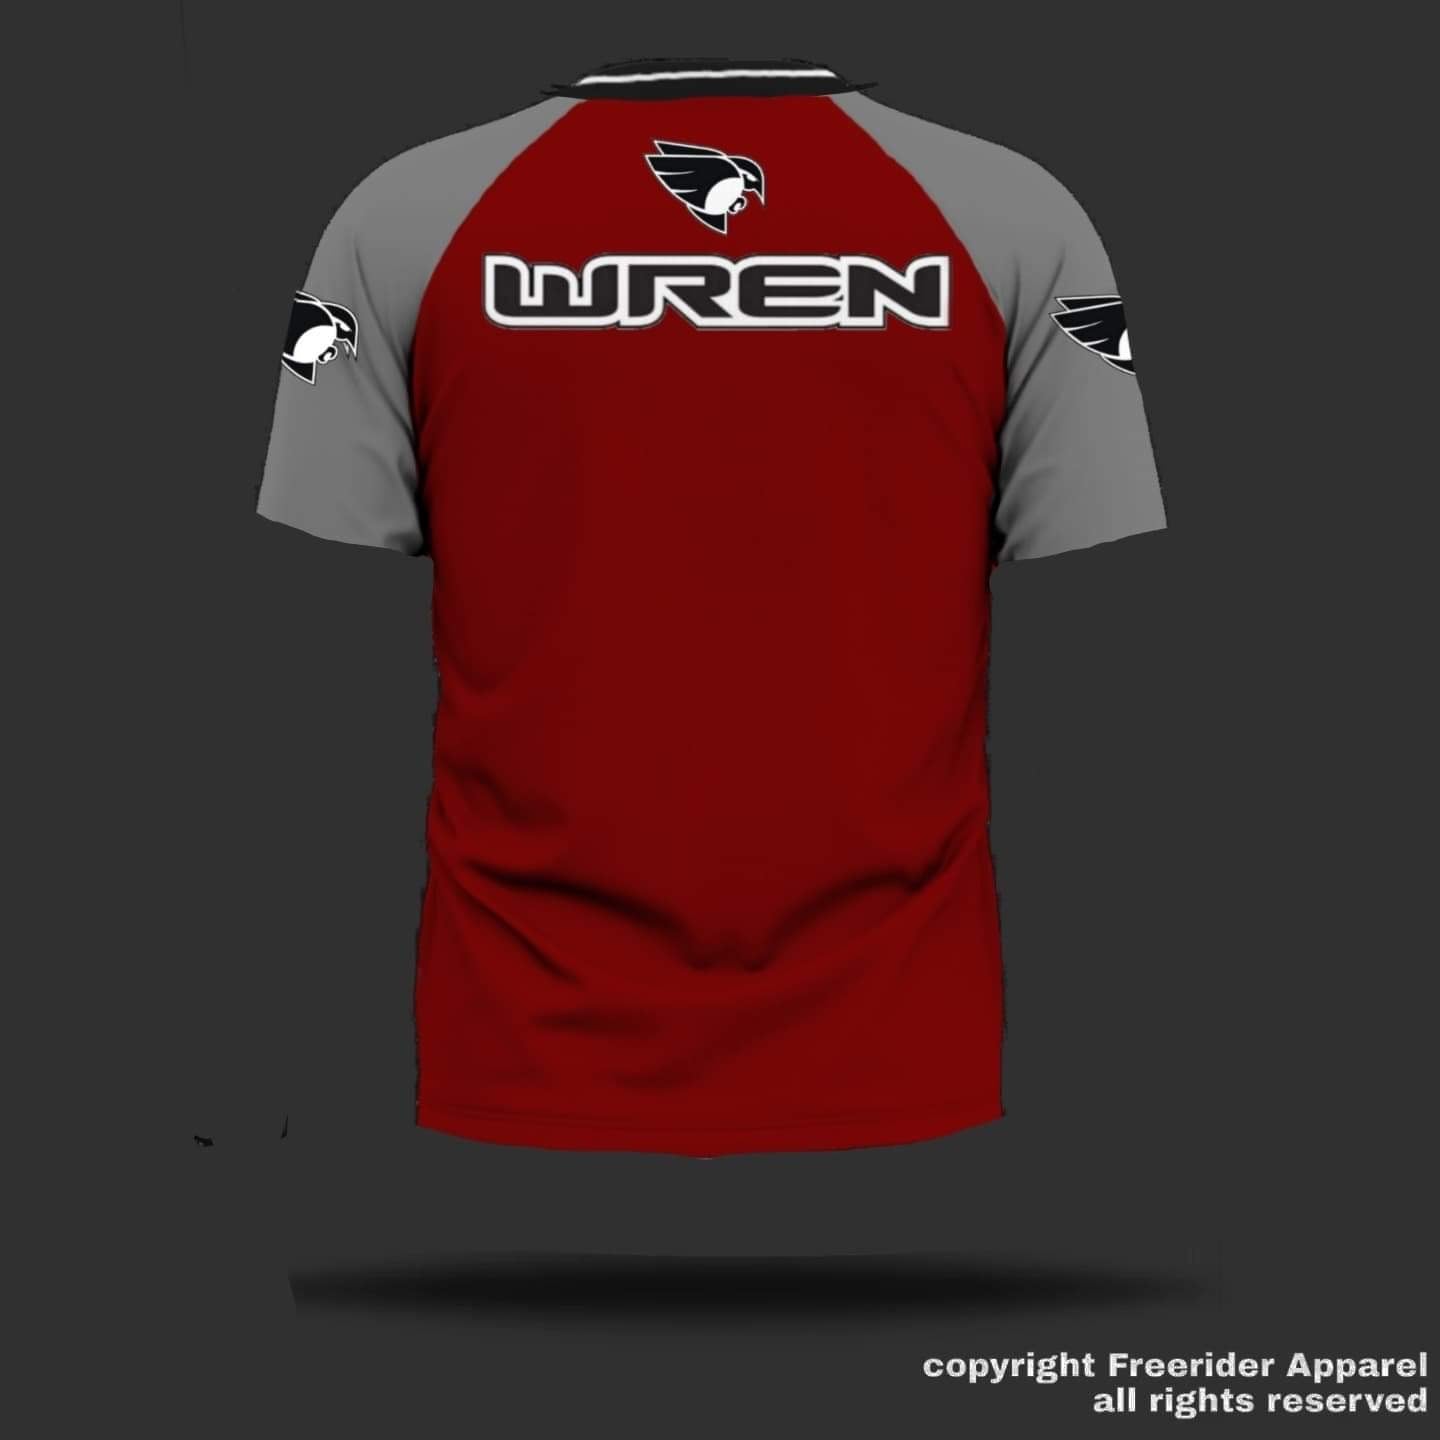 WREN Men's Short Sleeve Jersey - Red/Grey Raglan